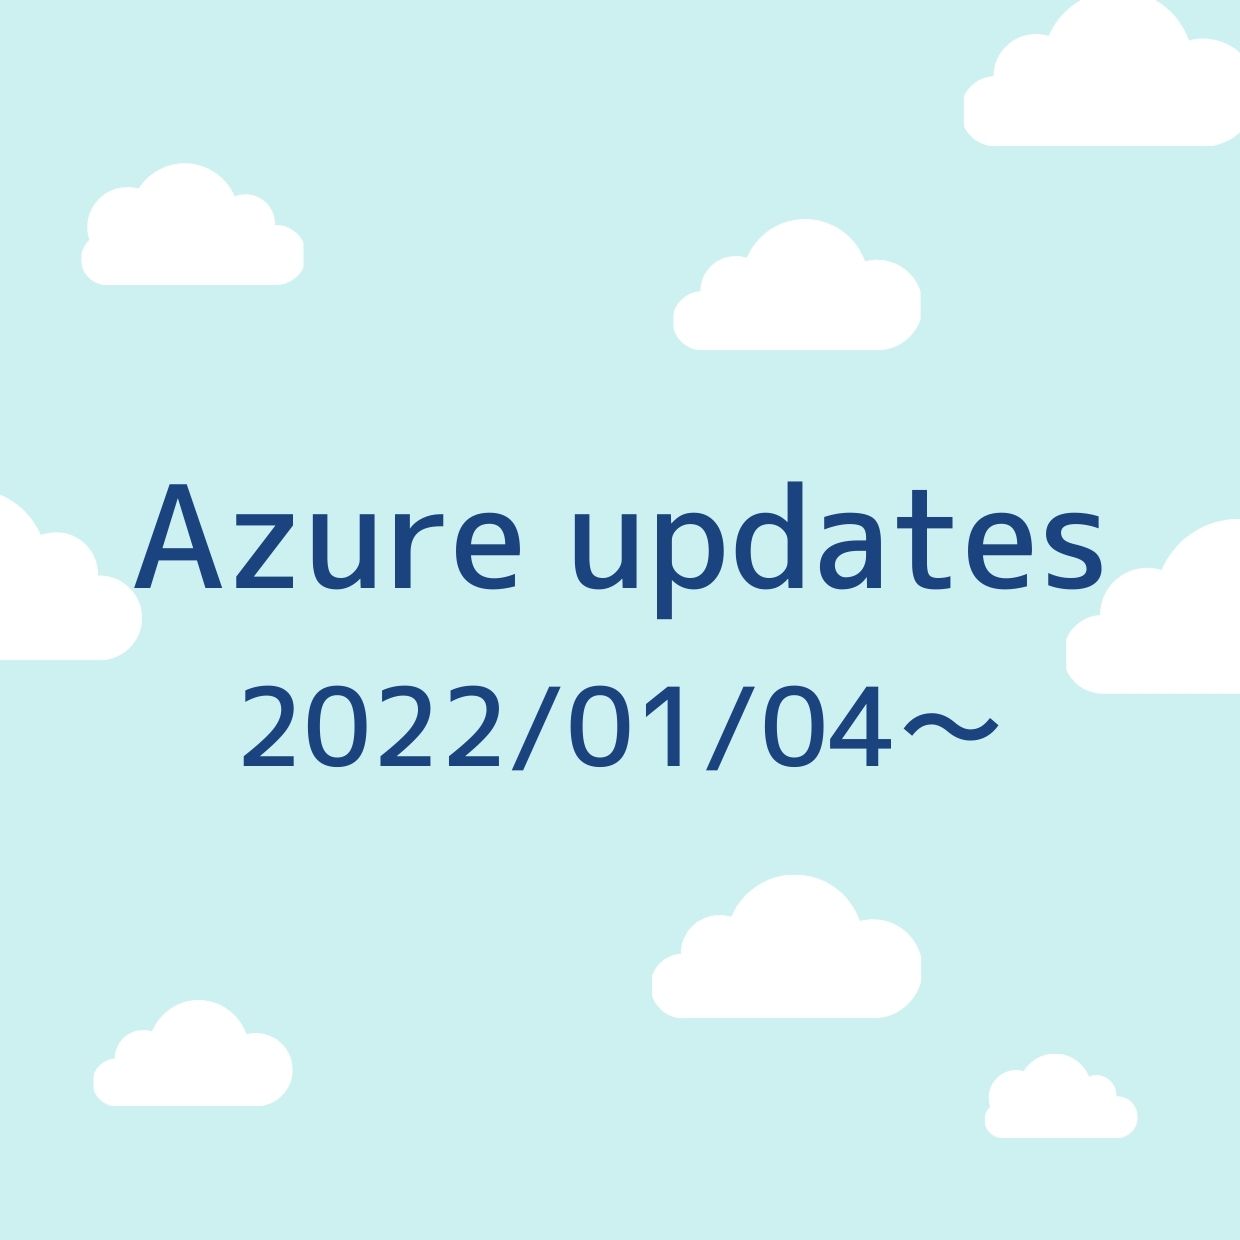 2022/01/04週の Azure updates 日本語速報